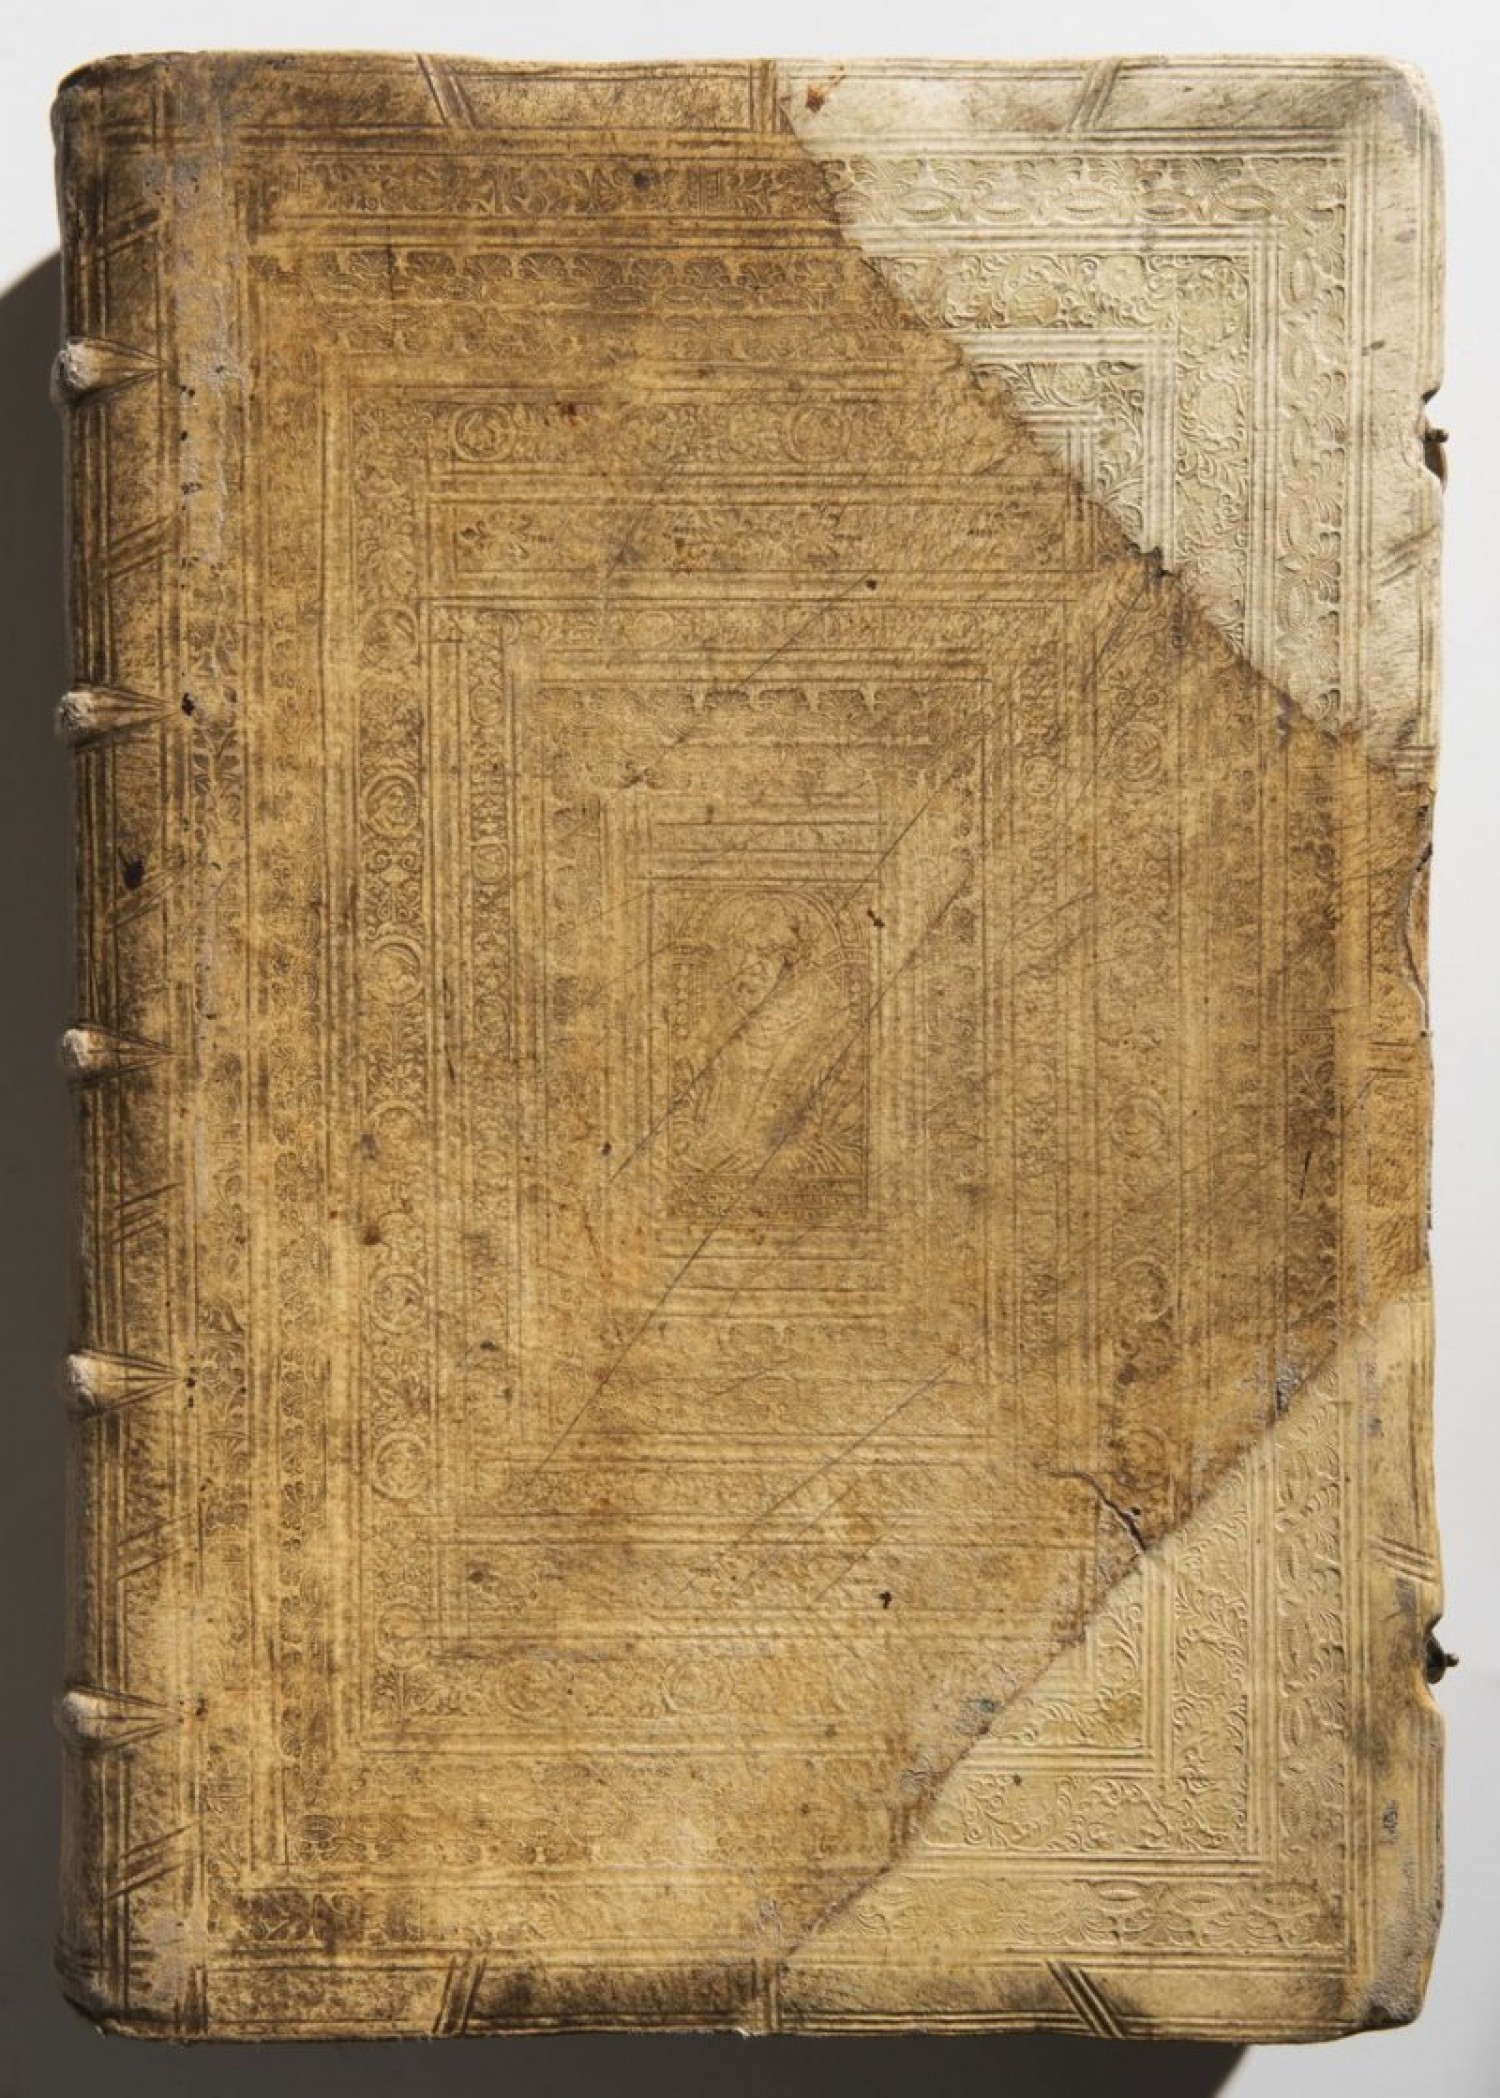 Hartmann Schedel: Liber Chronicarum, Norimberk 1493 47 × 33 × 9,5 cm  cena: 806 000 Kč, Arthouse Hejtmánek 6. 12. 2018